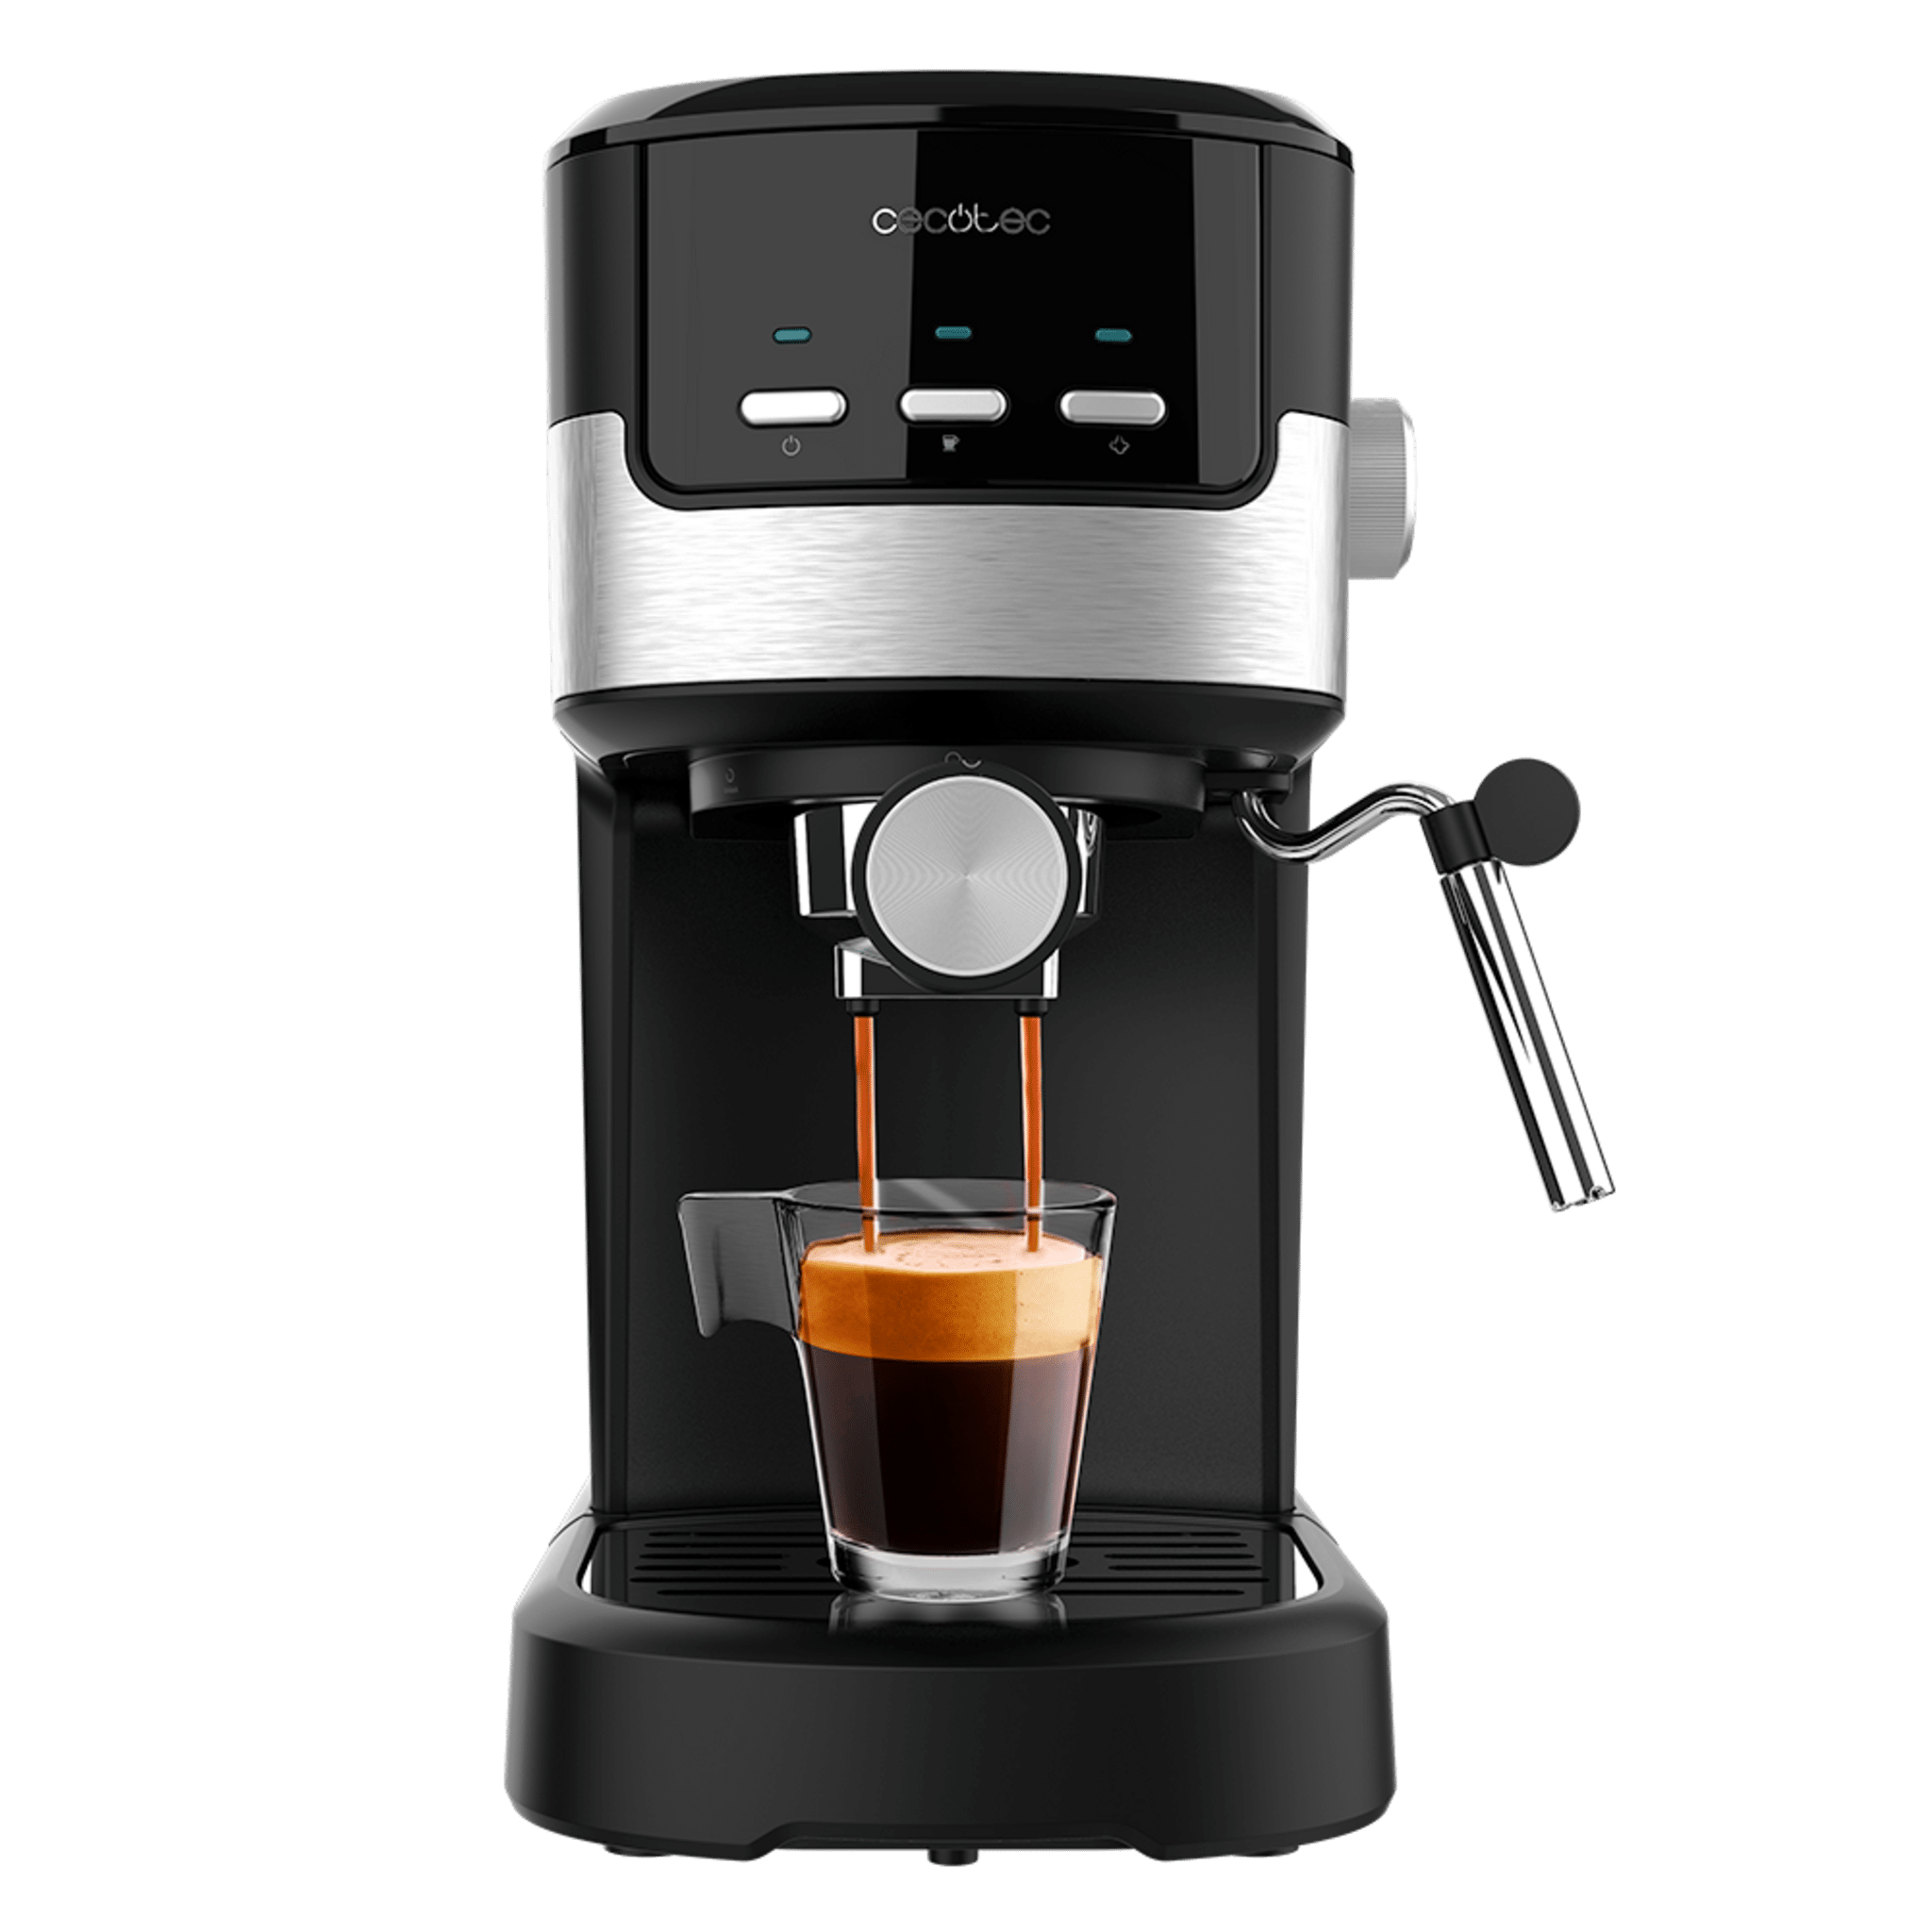 Cafetera Expresso Superautomática Cecotec Power Espresso 20 Pecan